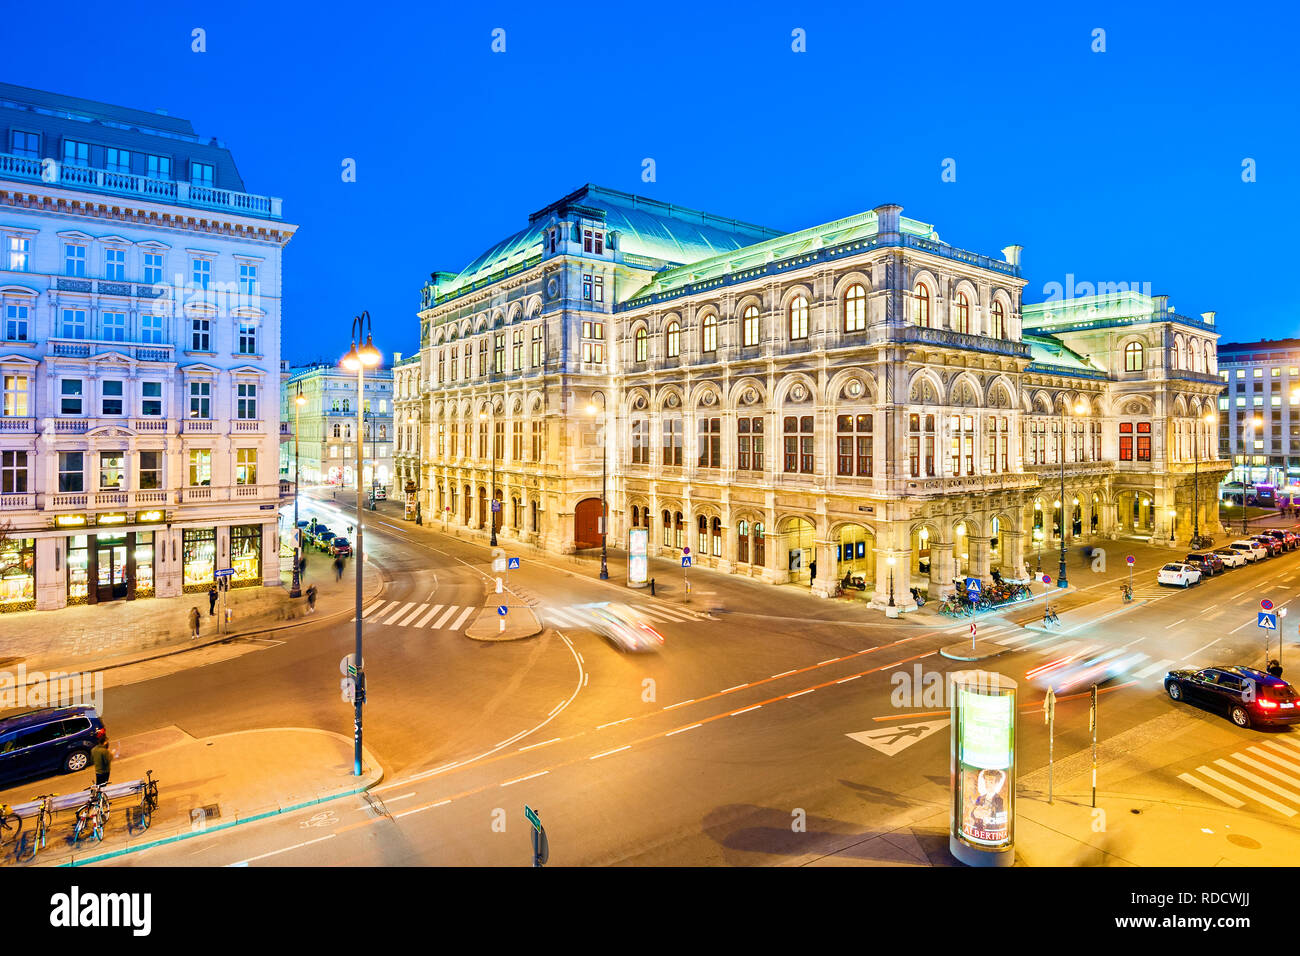 Maison de l'Opéra de Vienne, Wiener Staatsoper, Vienne, Autriche. Banque D'Images